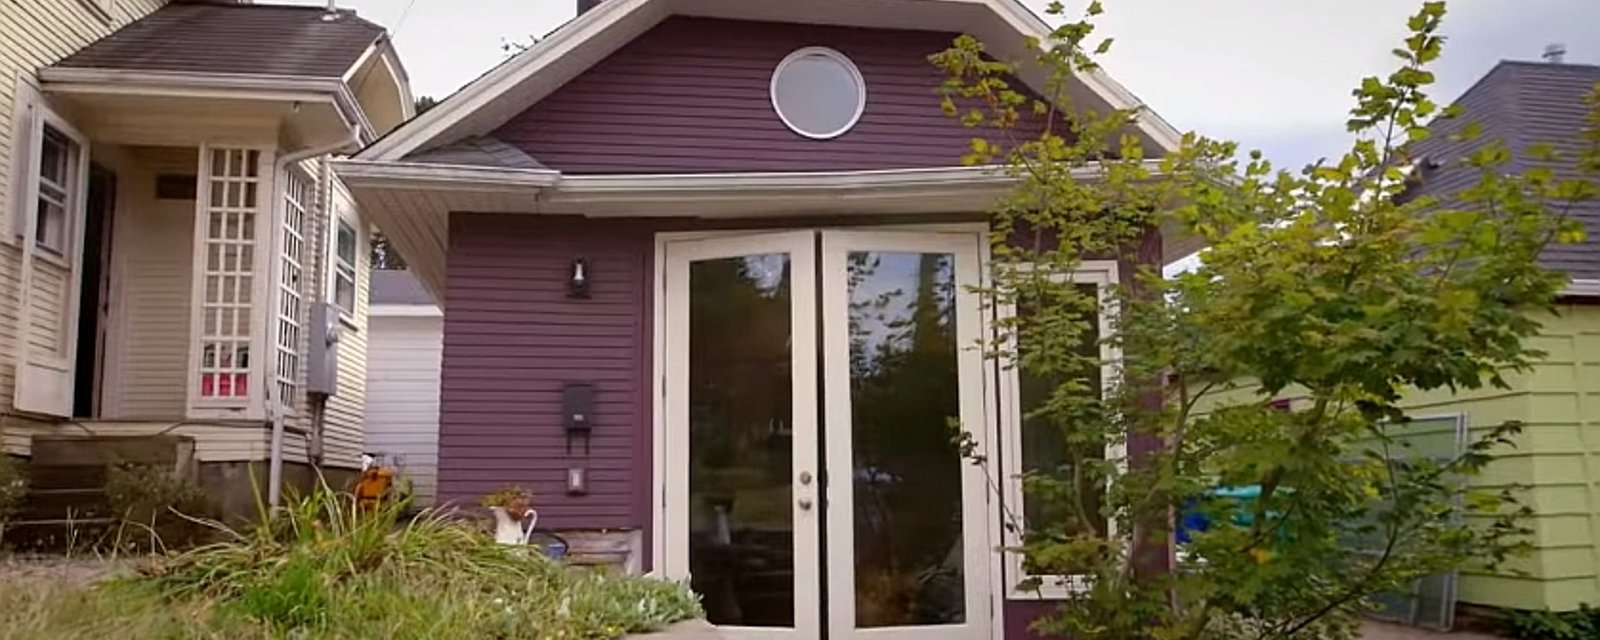 Cet homme transforme son garage en mini-maison... pour accueillir belle-maman